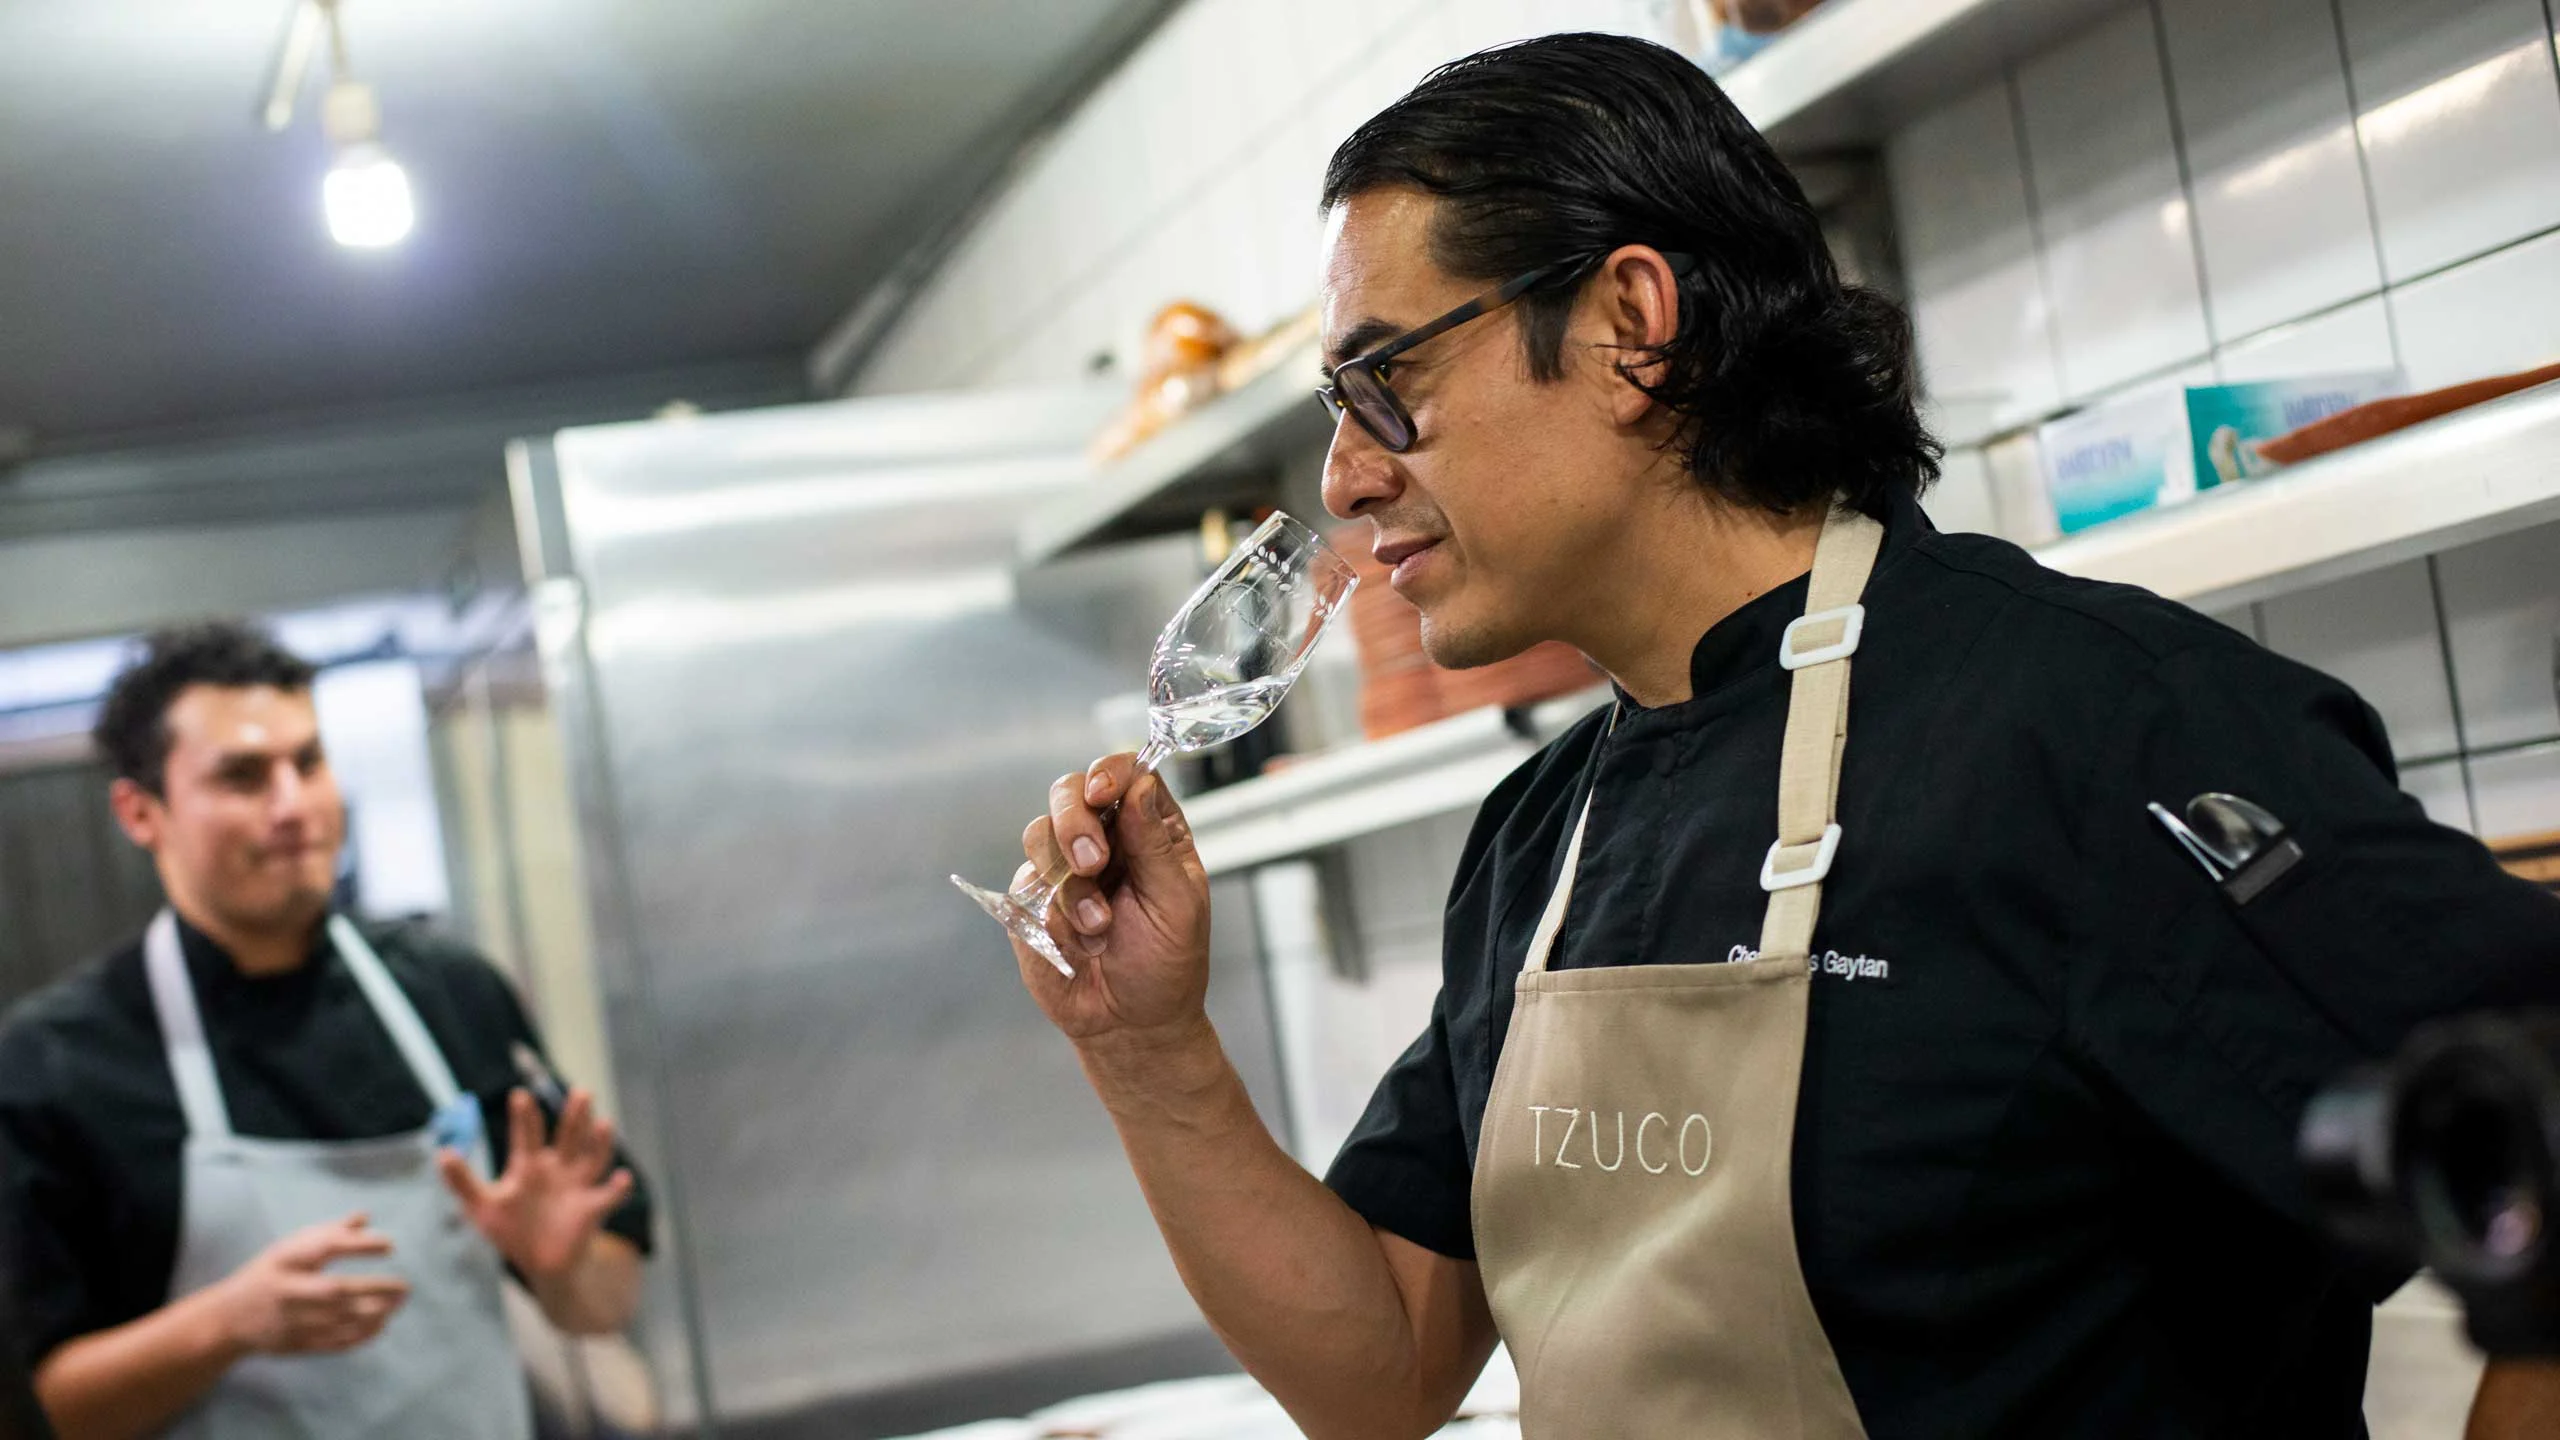 Carlos Gaytán dará una clase de cocina en Instagram